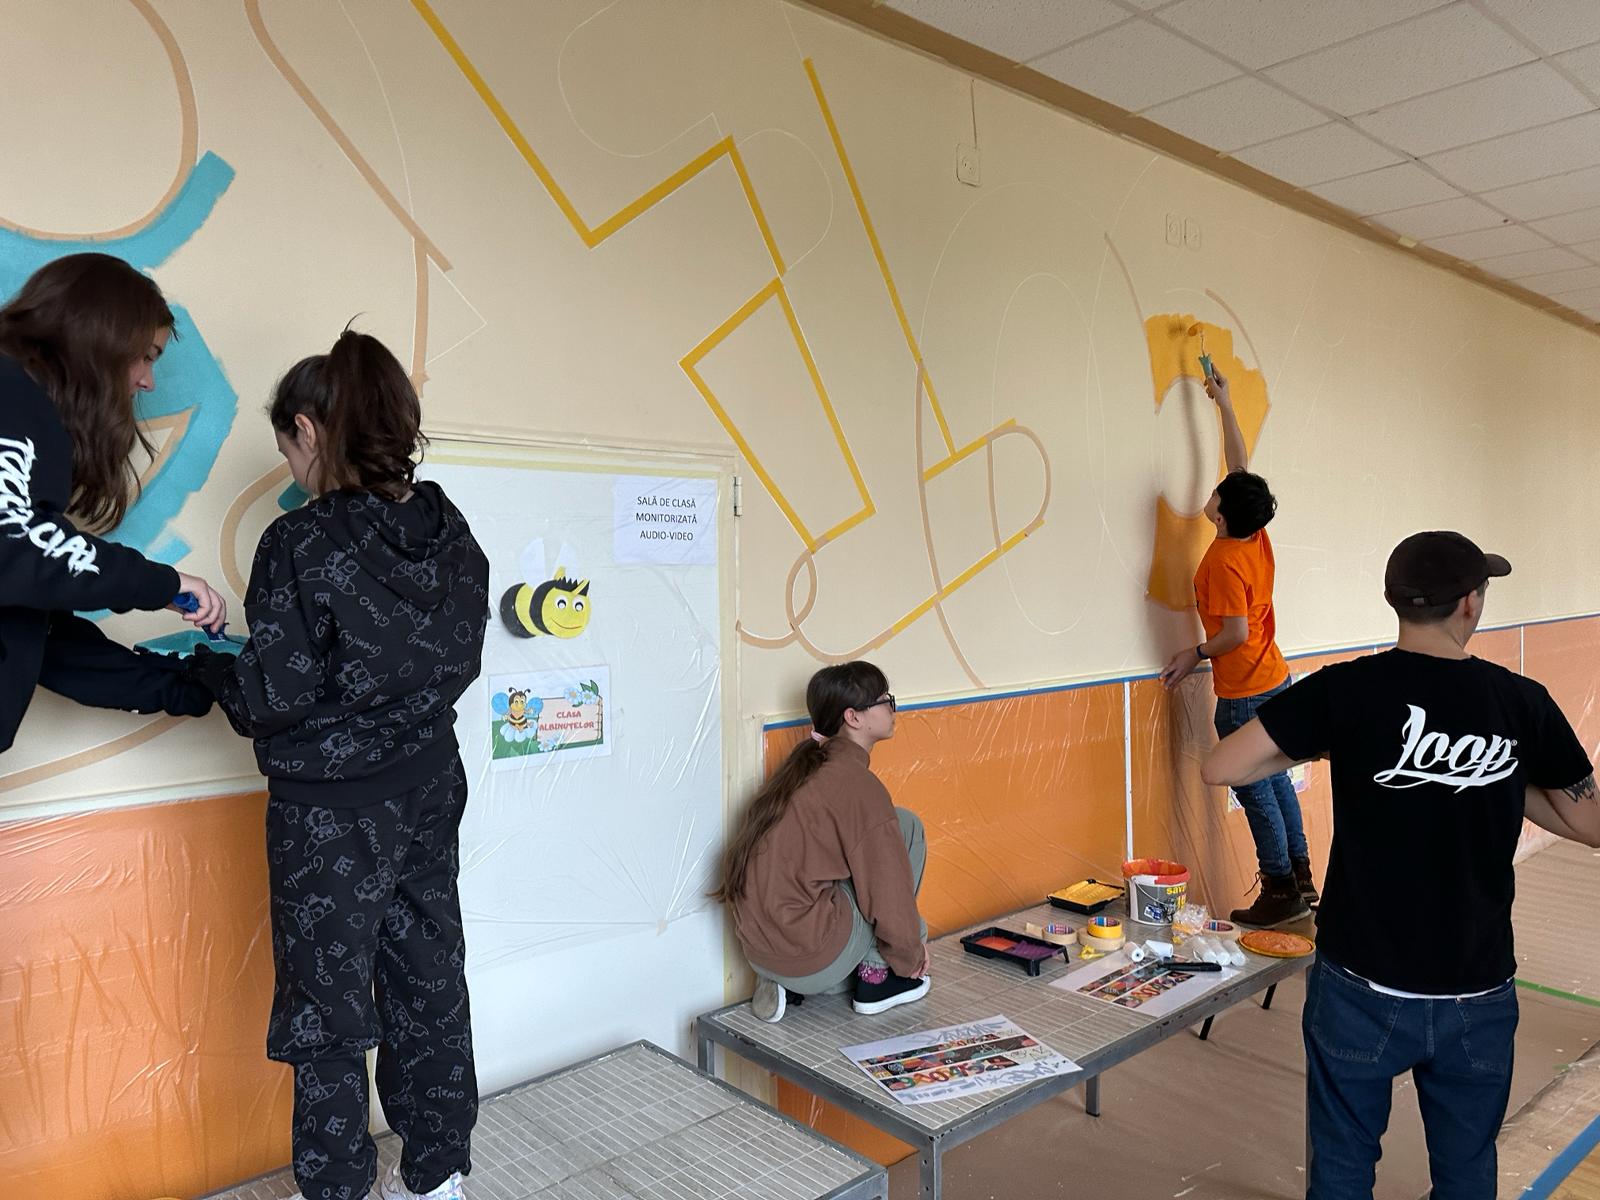 CJ Ilfov Proiectul ”Colorează ți viitorul” continuă și anul acesta în Mogoșoaia